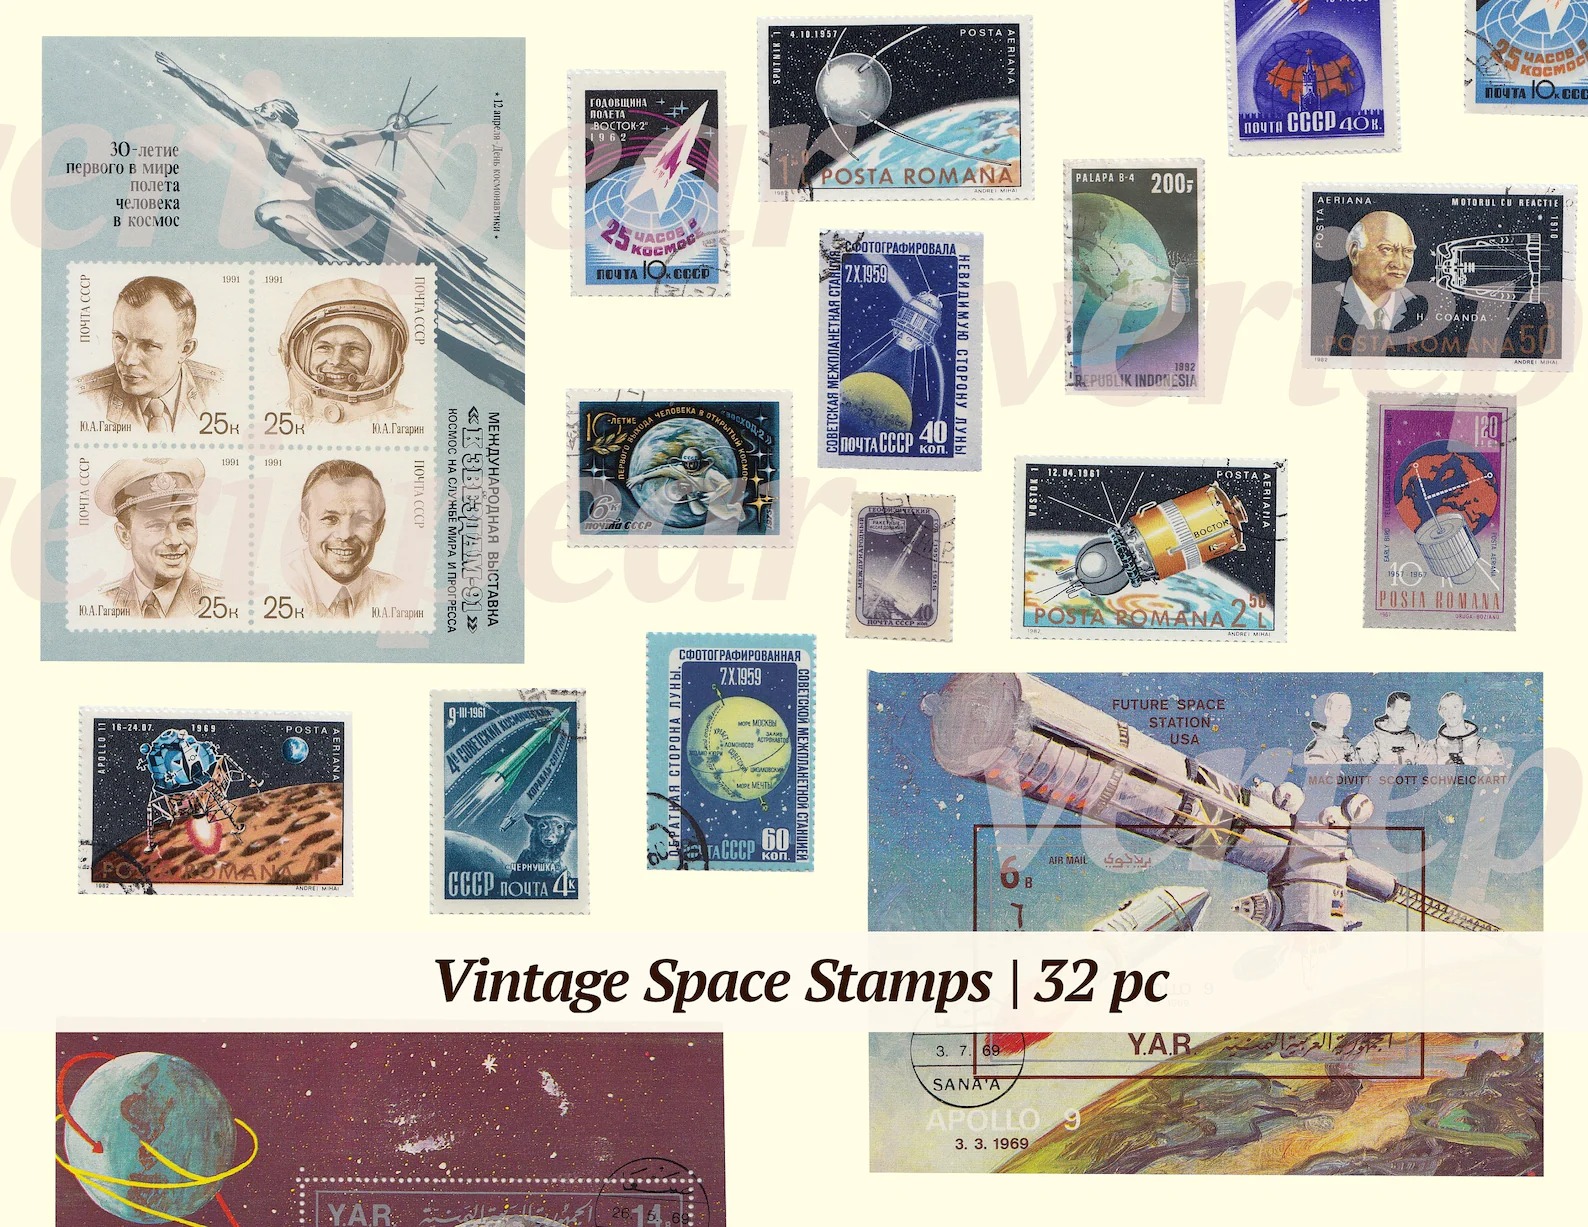 1204 复古太空邮票32 倍太空主题邮票高分辨率照片CLIPARTO 数字下载旧邮票高分辨率照片CLIPARTO 可打印纸蜉蝣剪贴画宇航员Space Stamps